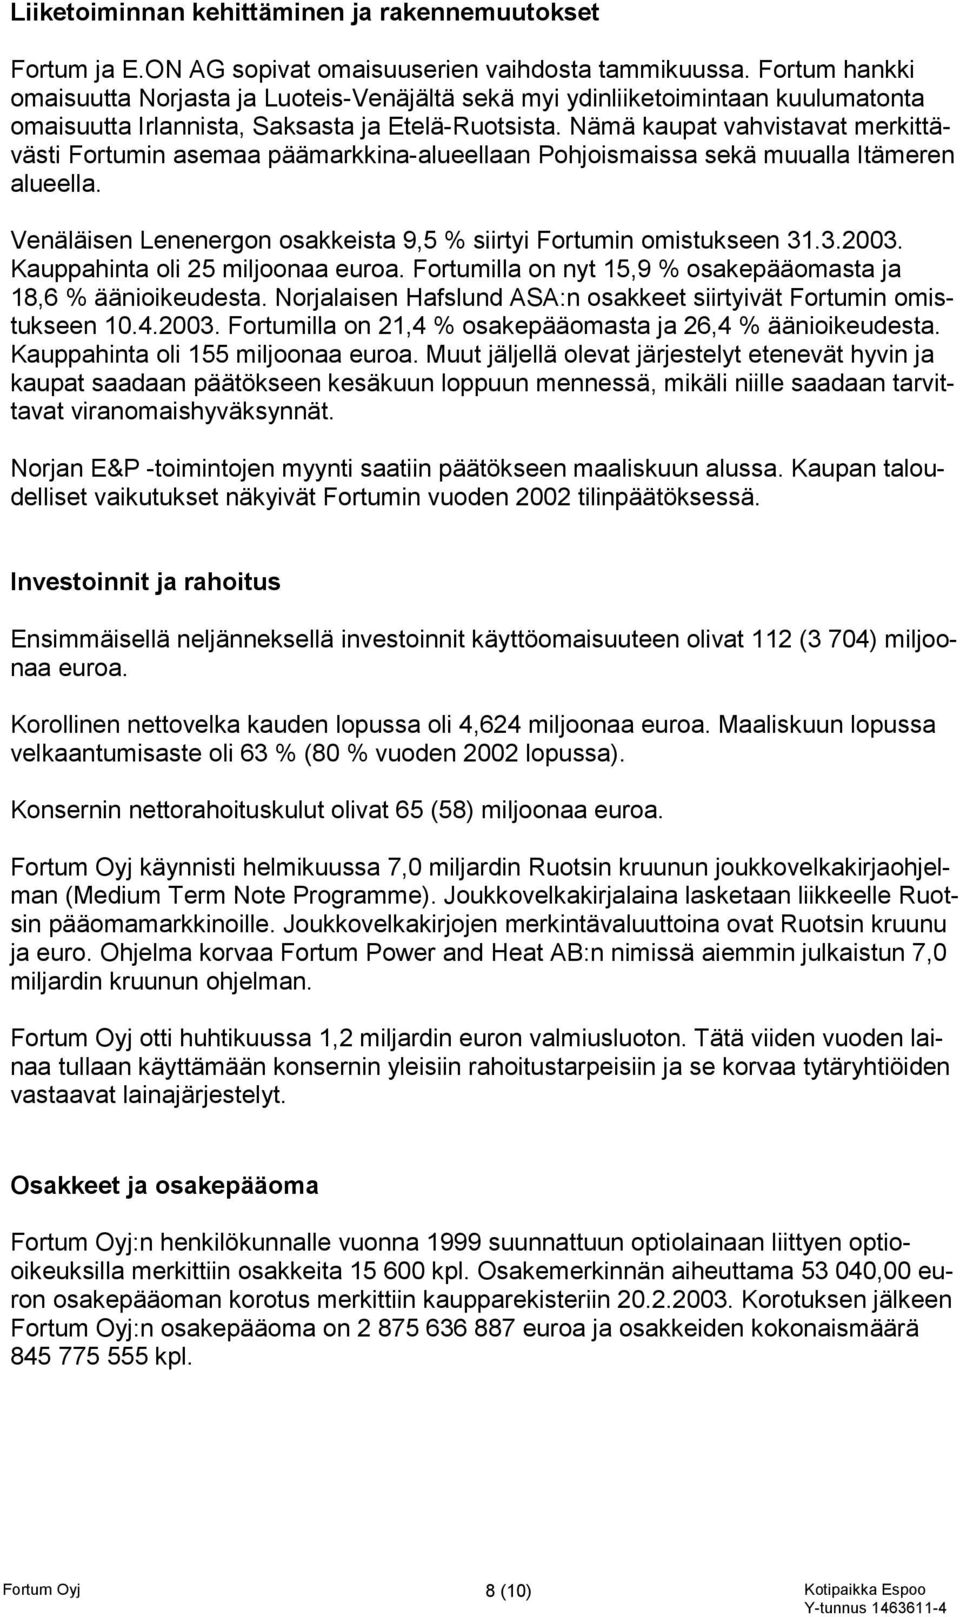 Nämä kaupat vahvistavat merkittävästi Fortumin asemaa päämarkkina-alueellaan Pohjoismaissa sekä muualla Itämeren alueella. Venäläisen Lenenergon osakkeista 9,5 % siirtyi Fortumin omistukseen 31.3.2003.